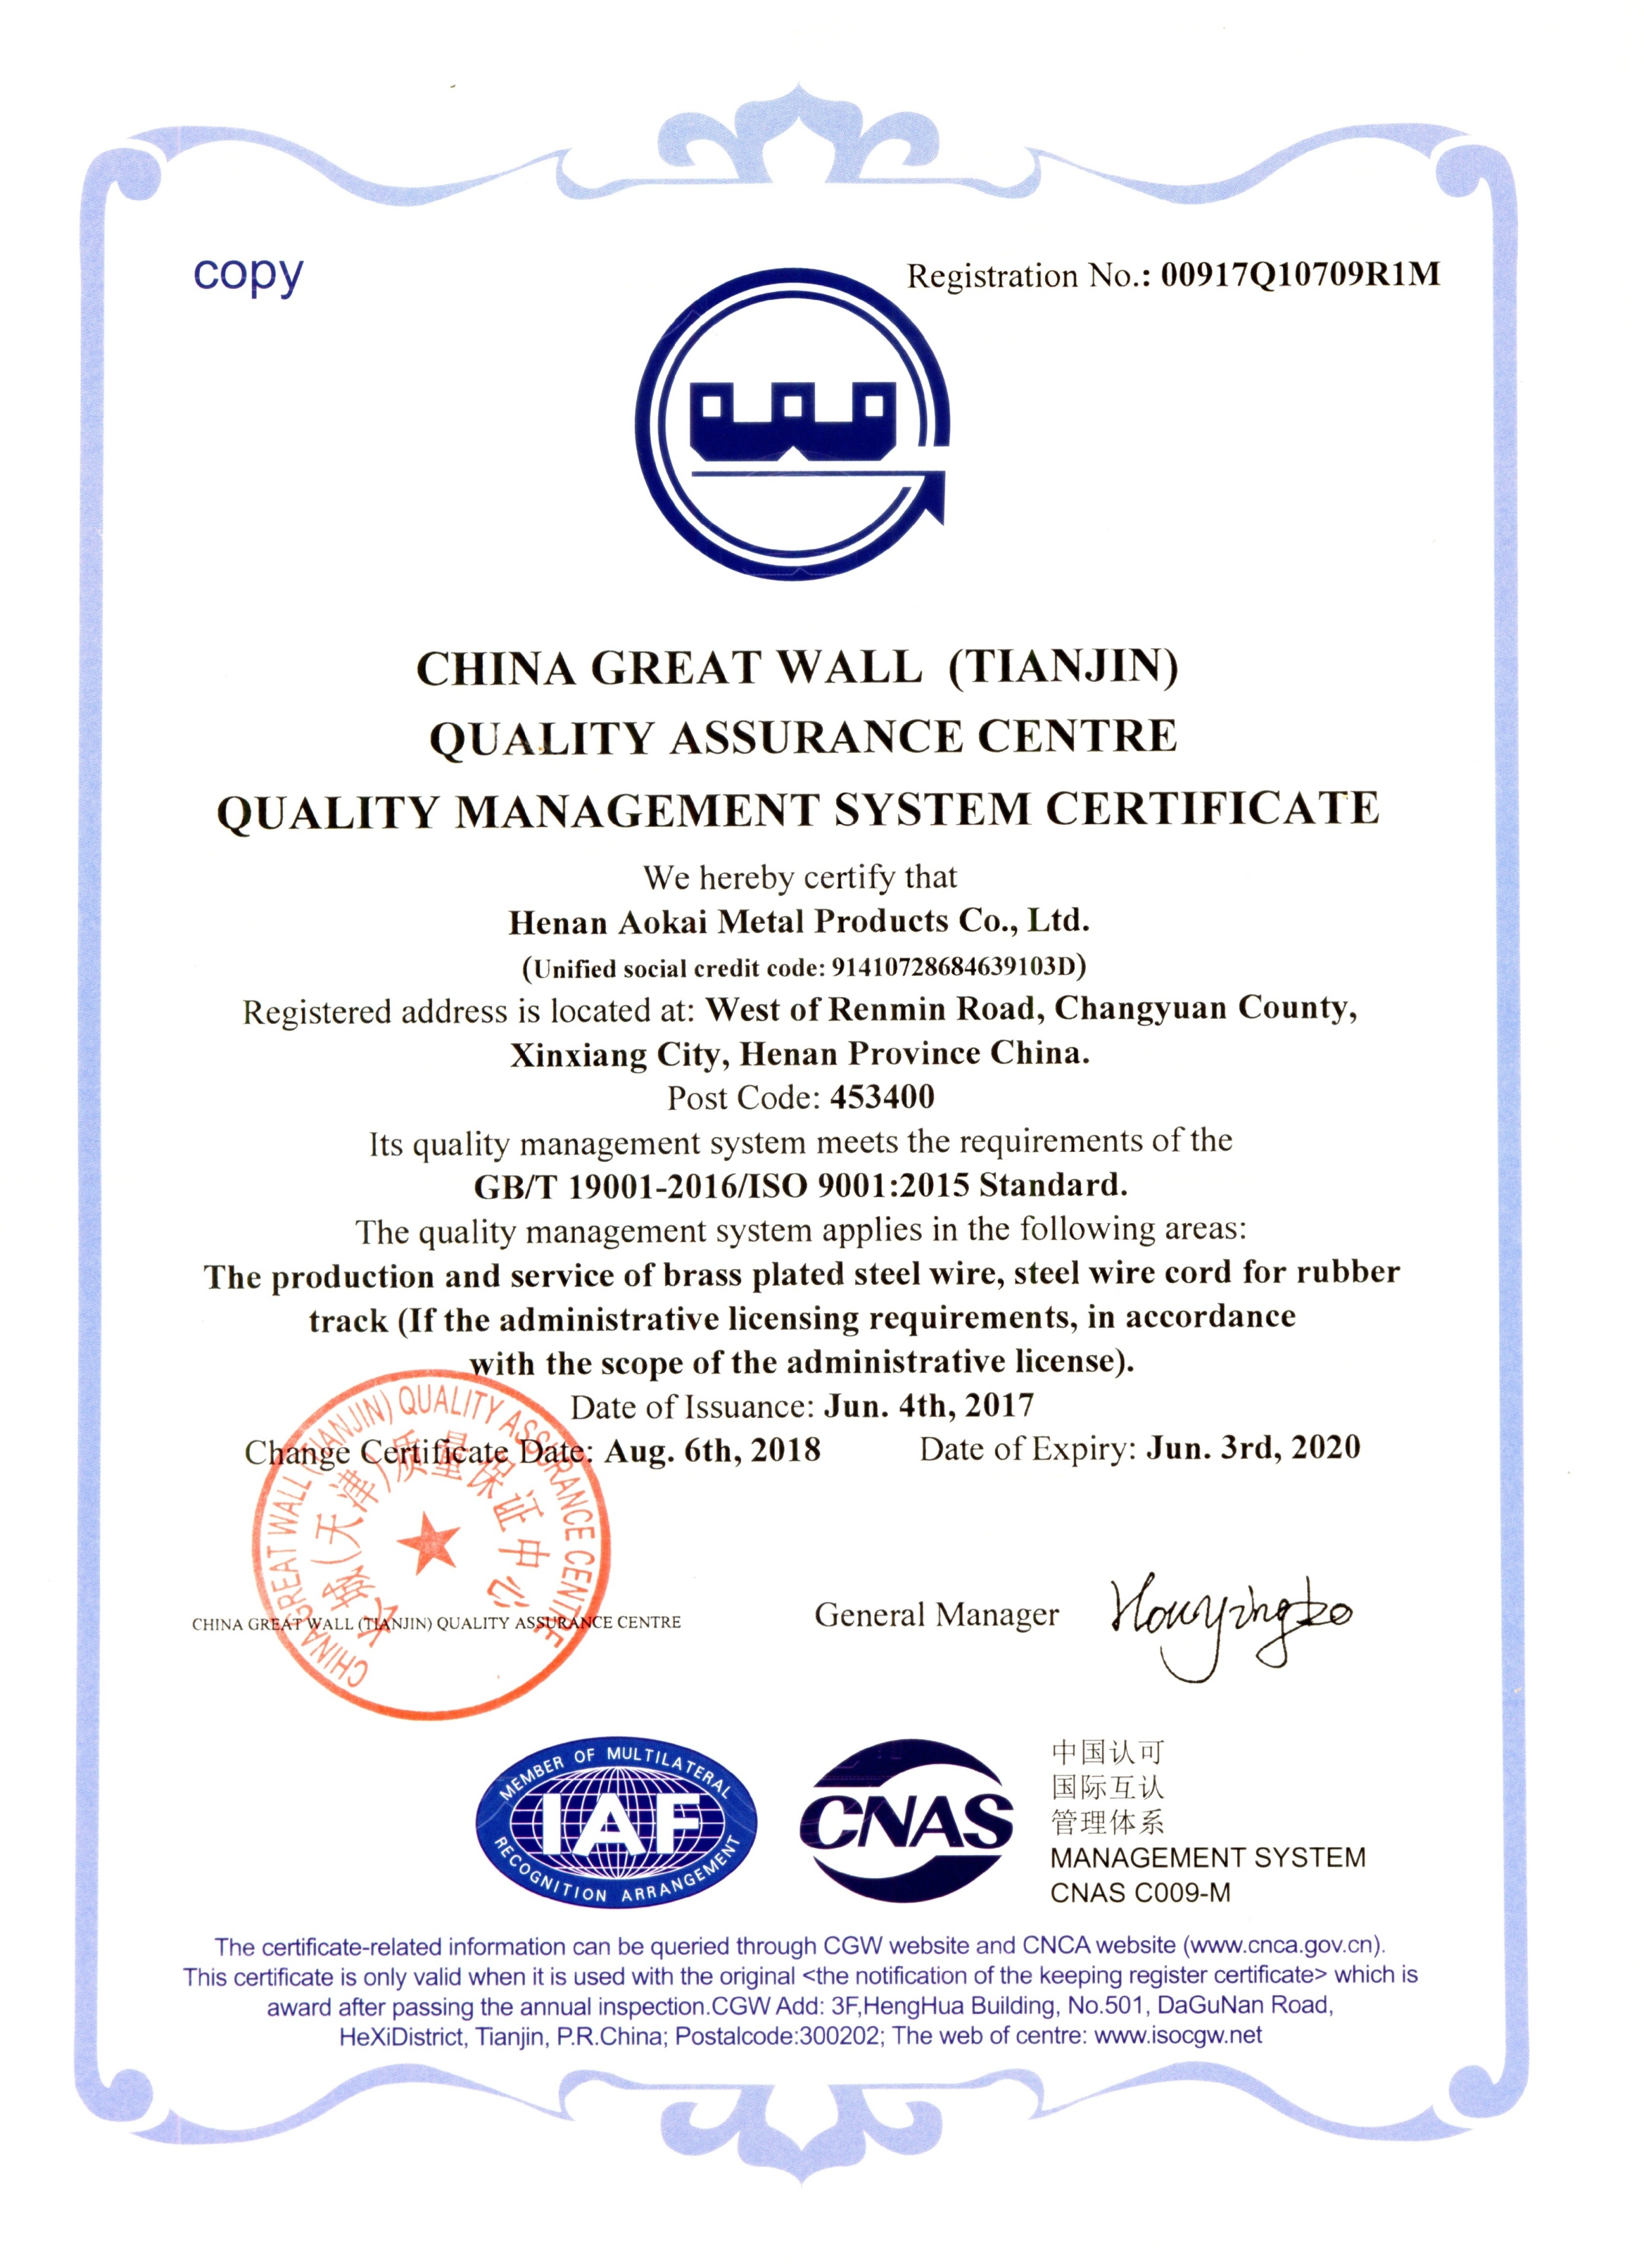 ISO9001-2015 QMSC.jpg